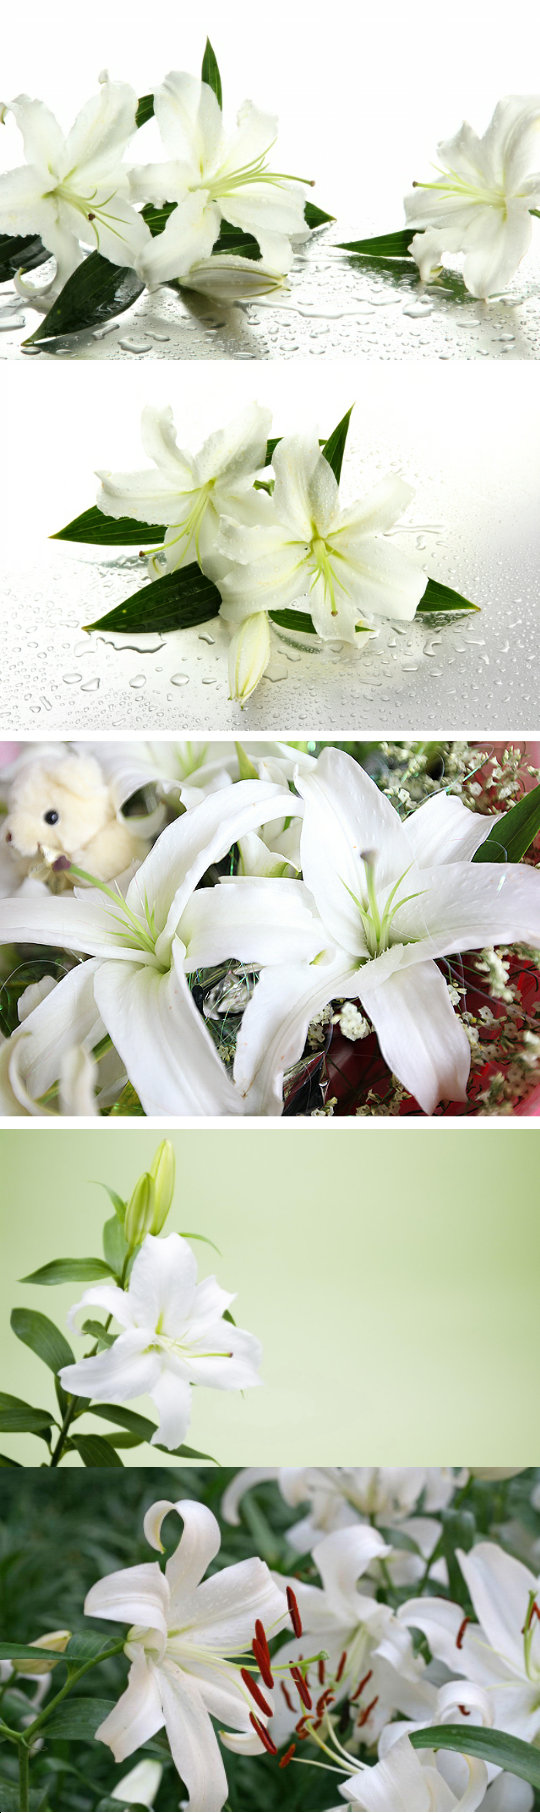 (2)白百合的花语是纯洁,庄严,心心相印,白百合象征着百年好合,持久的